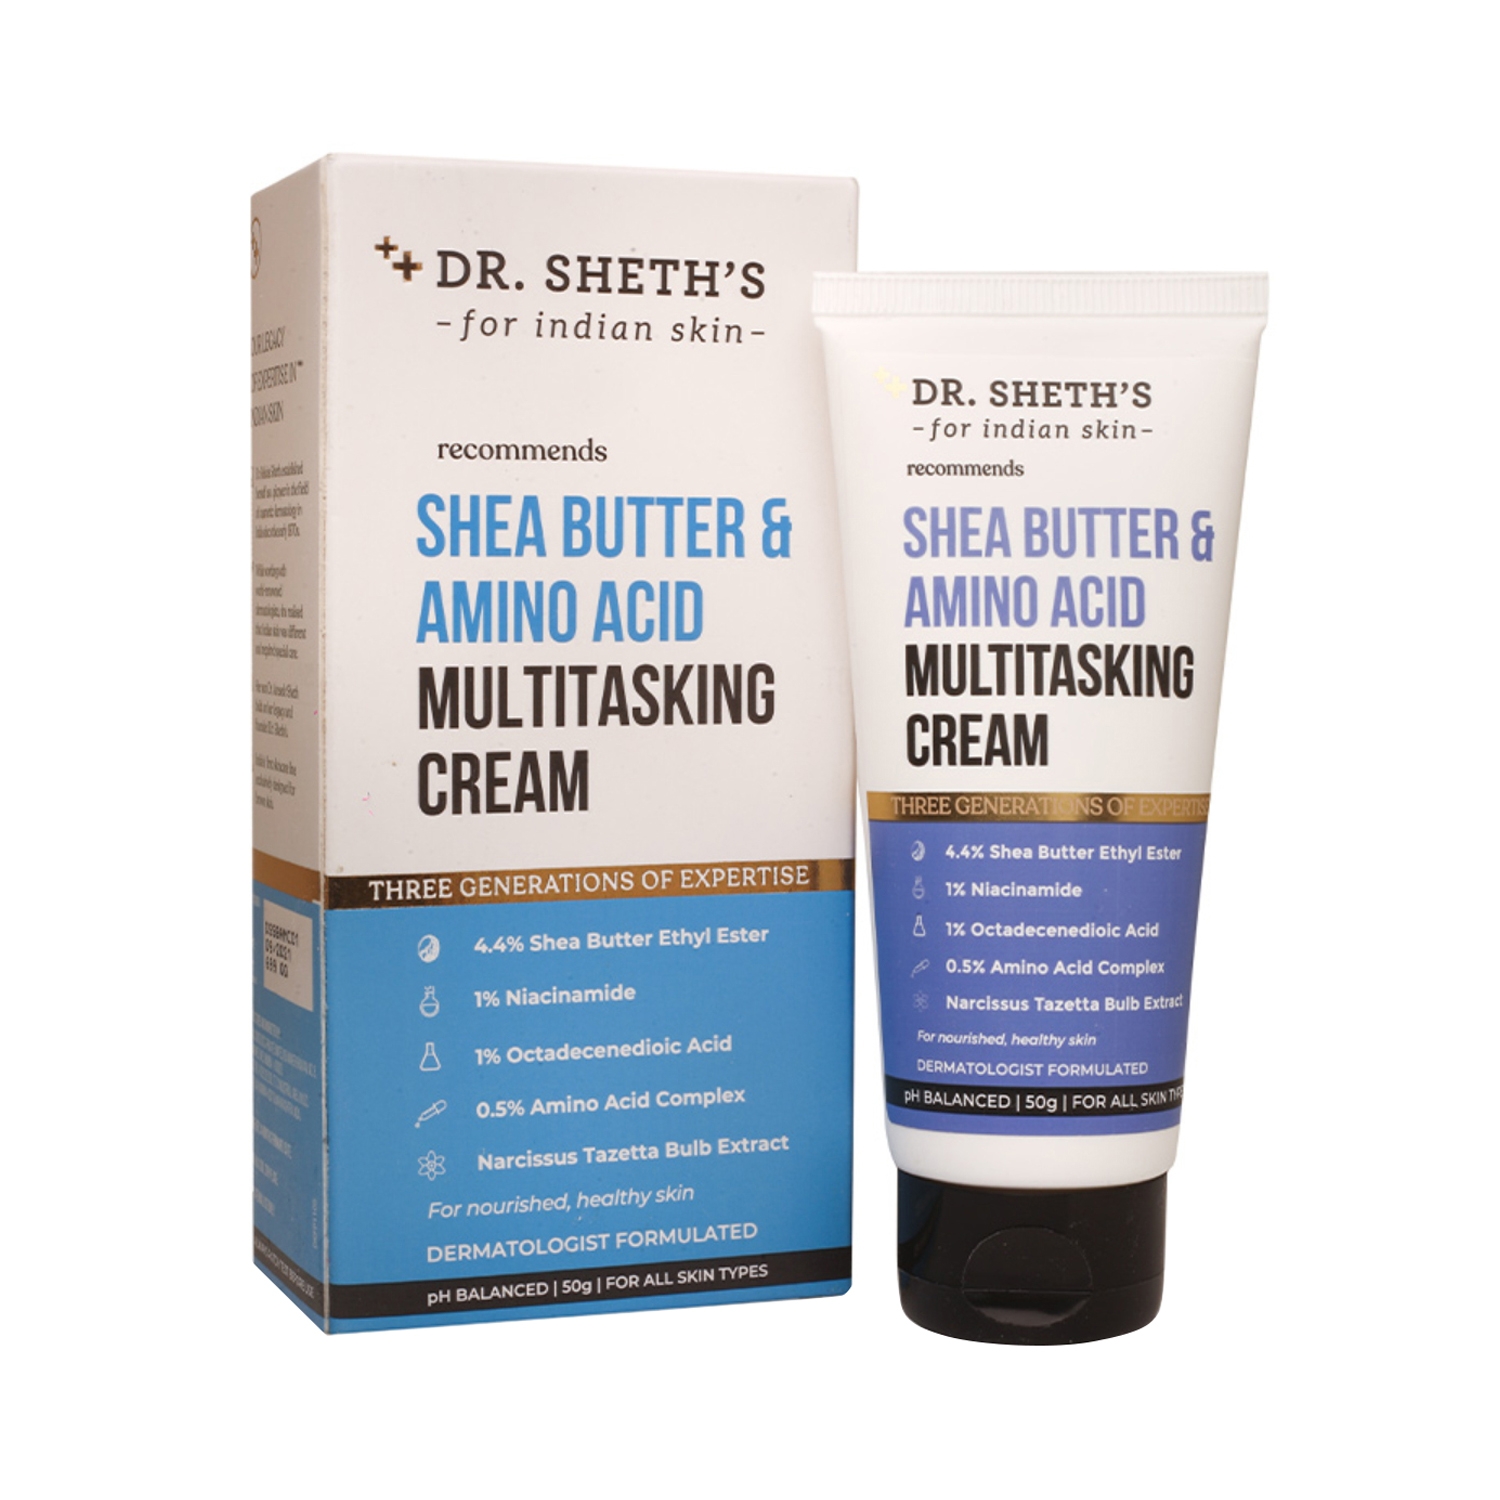 Dr. Sheth's Shea Butter & Amino Acid Multi-Tasking Cream (50g)